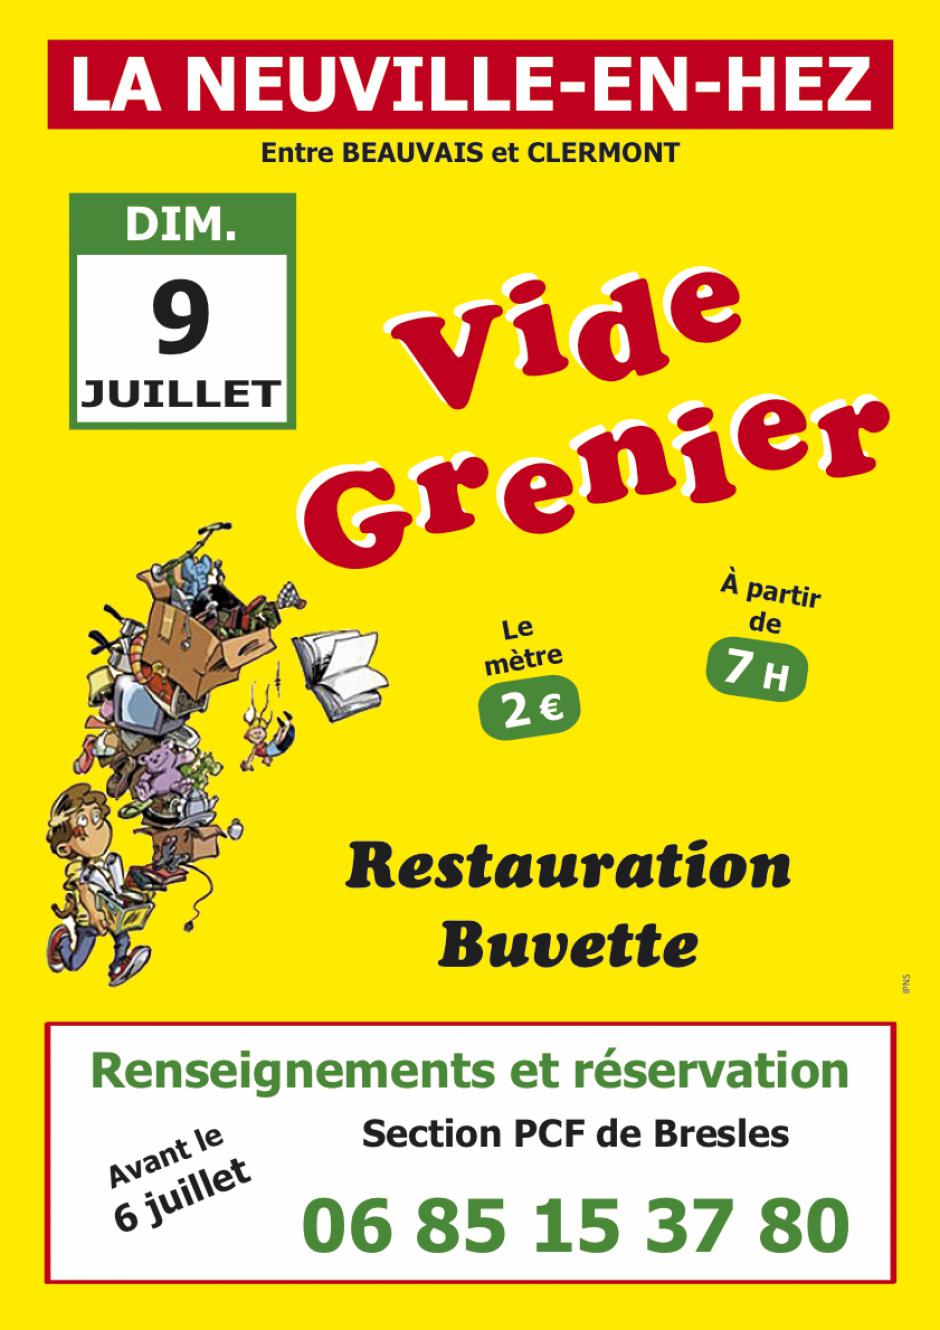 Affichette « Vide grenier de la section PCF de Bresles » - La Neuville-en-Hez, 9 juillet 2017